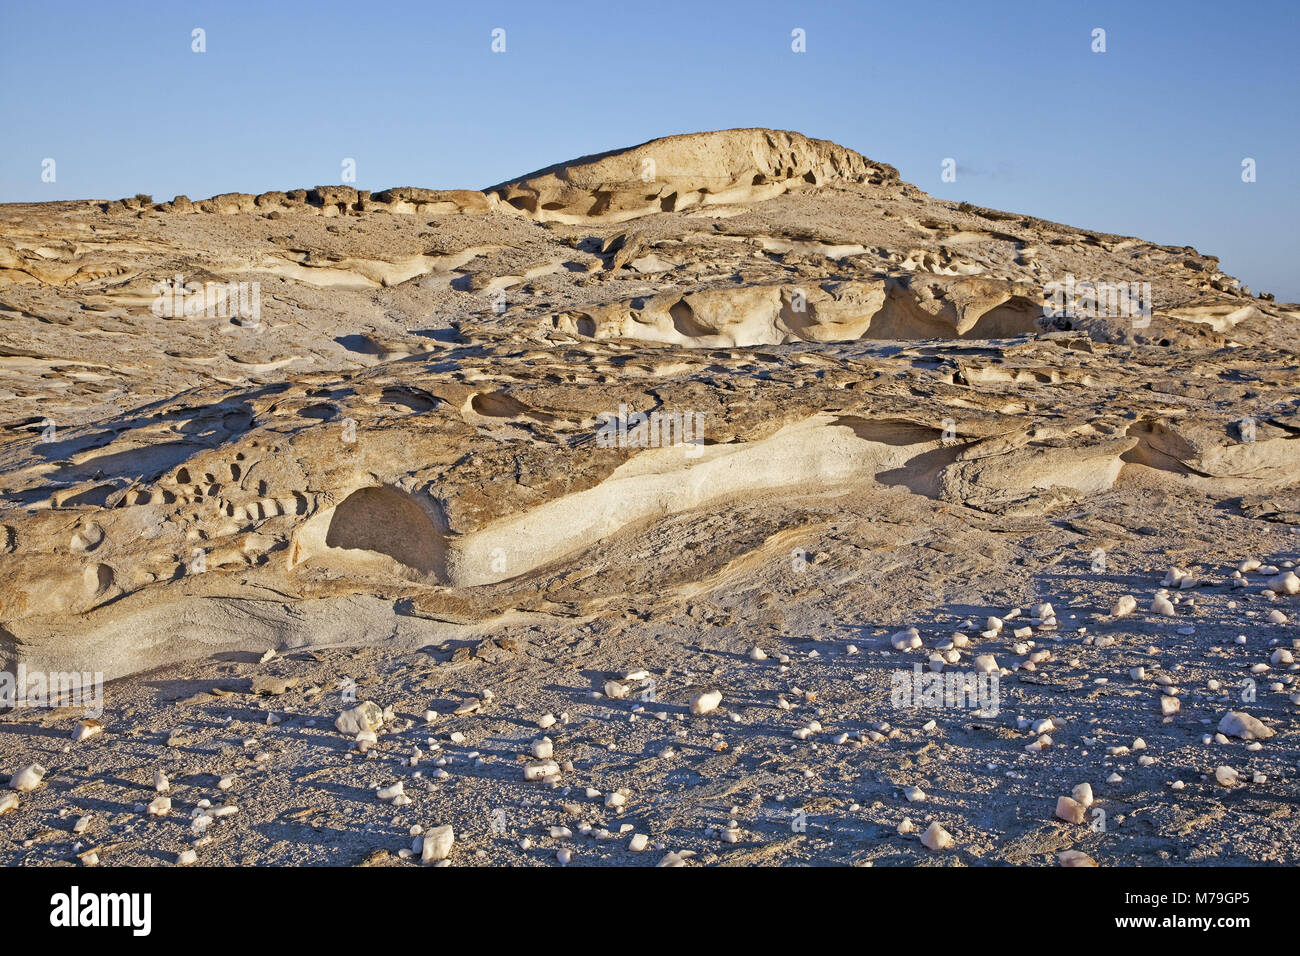 Africa, South-West Africa, Namib desert, sandstone rock, Namibia, Erongo region, Dorob National Park, Stock Photo